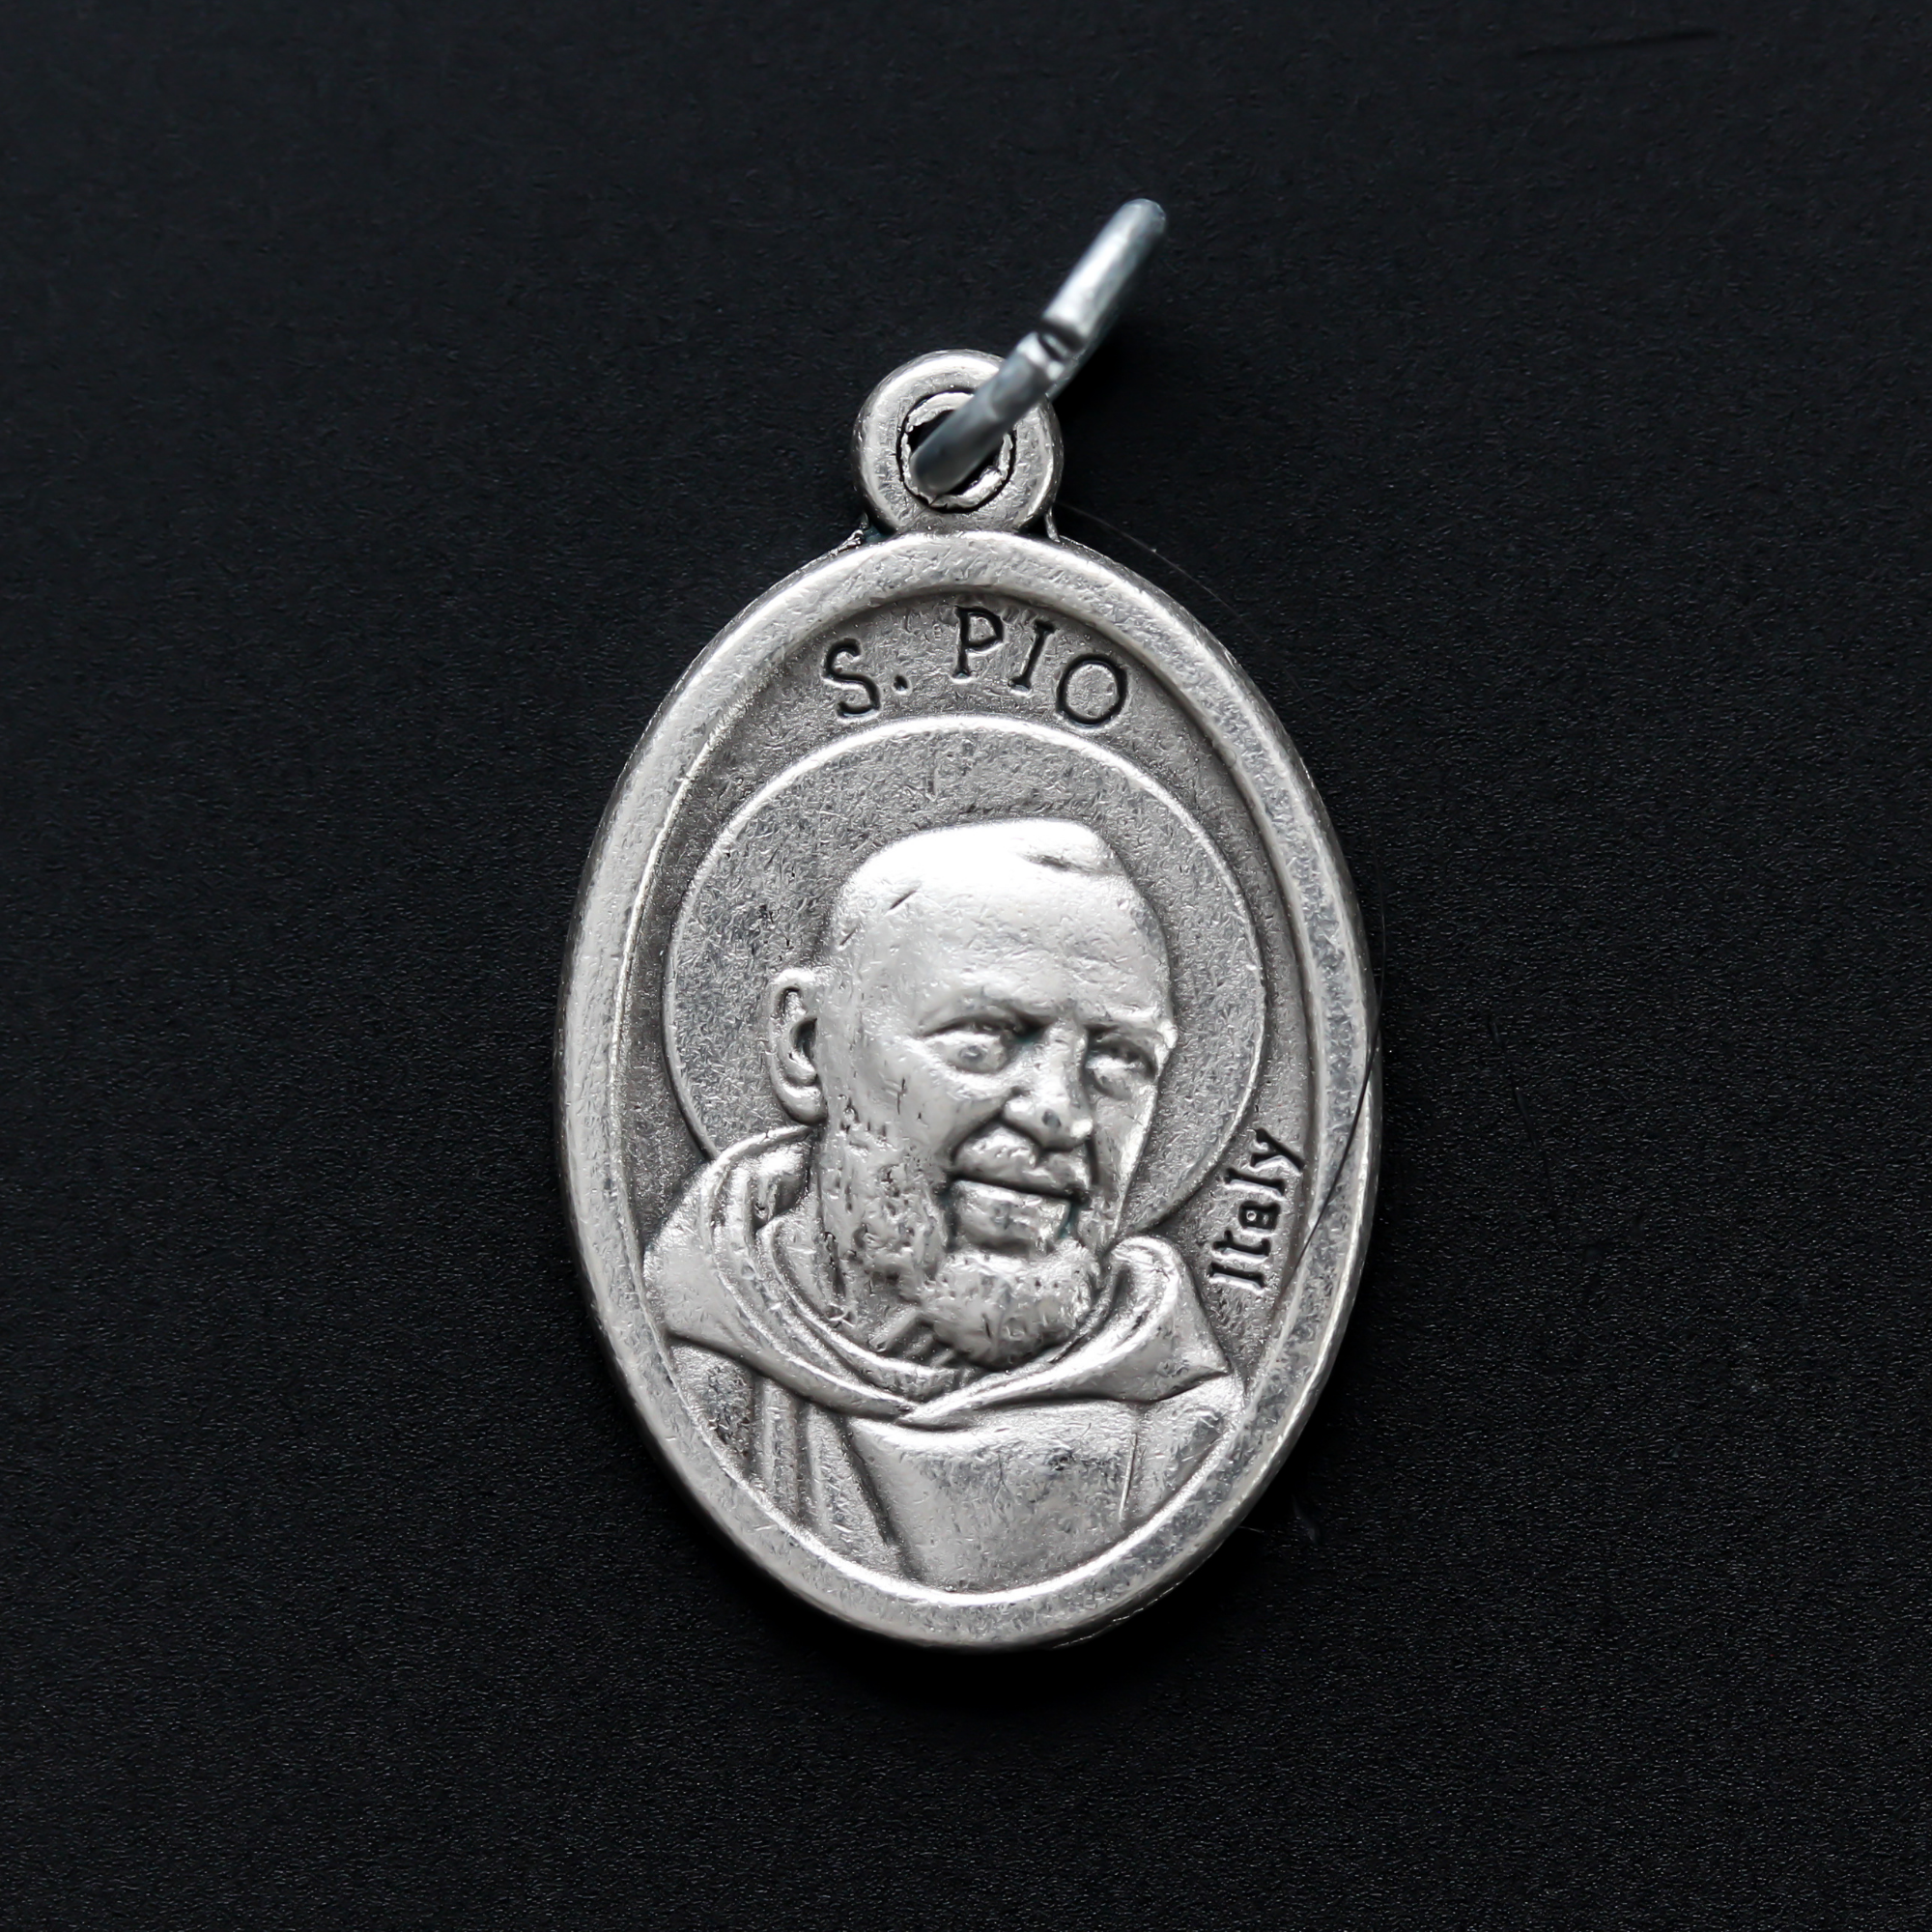 die cast silver medal depicting patron saint padre pio